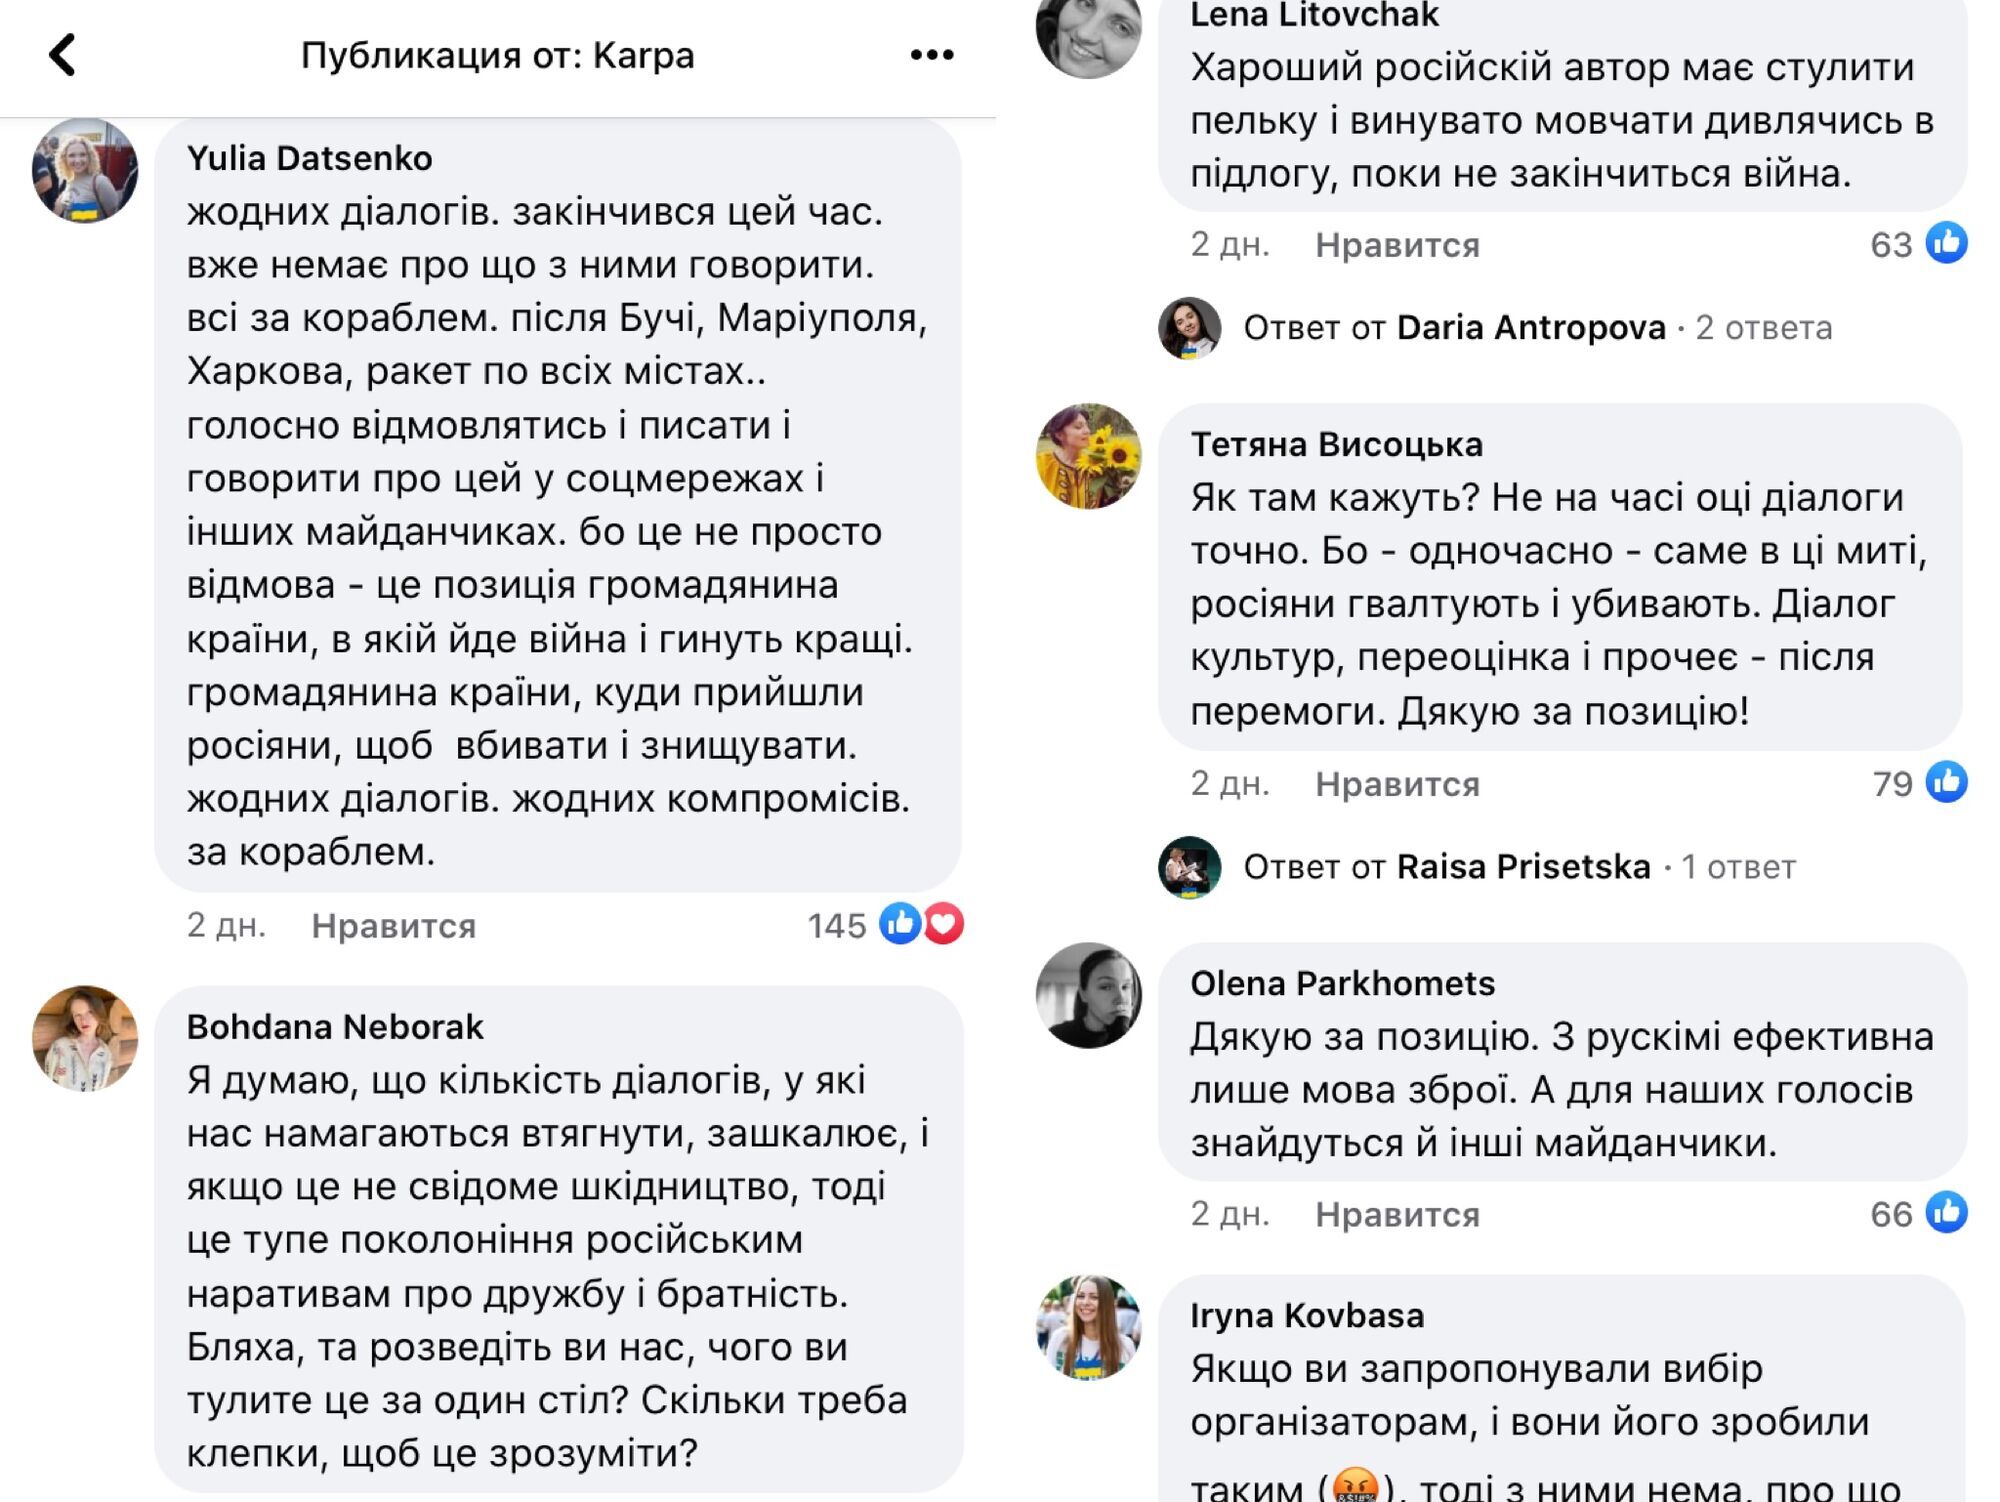 Ирена Карпа отказалась участвовать в мероприятии с россиянами: организаторы выбрали автора из РФ